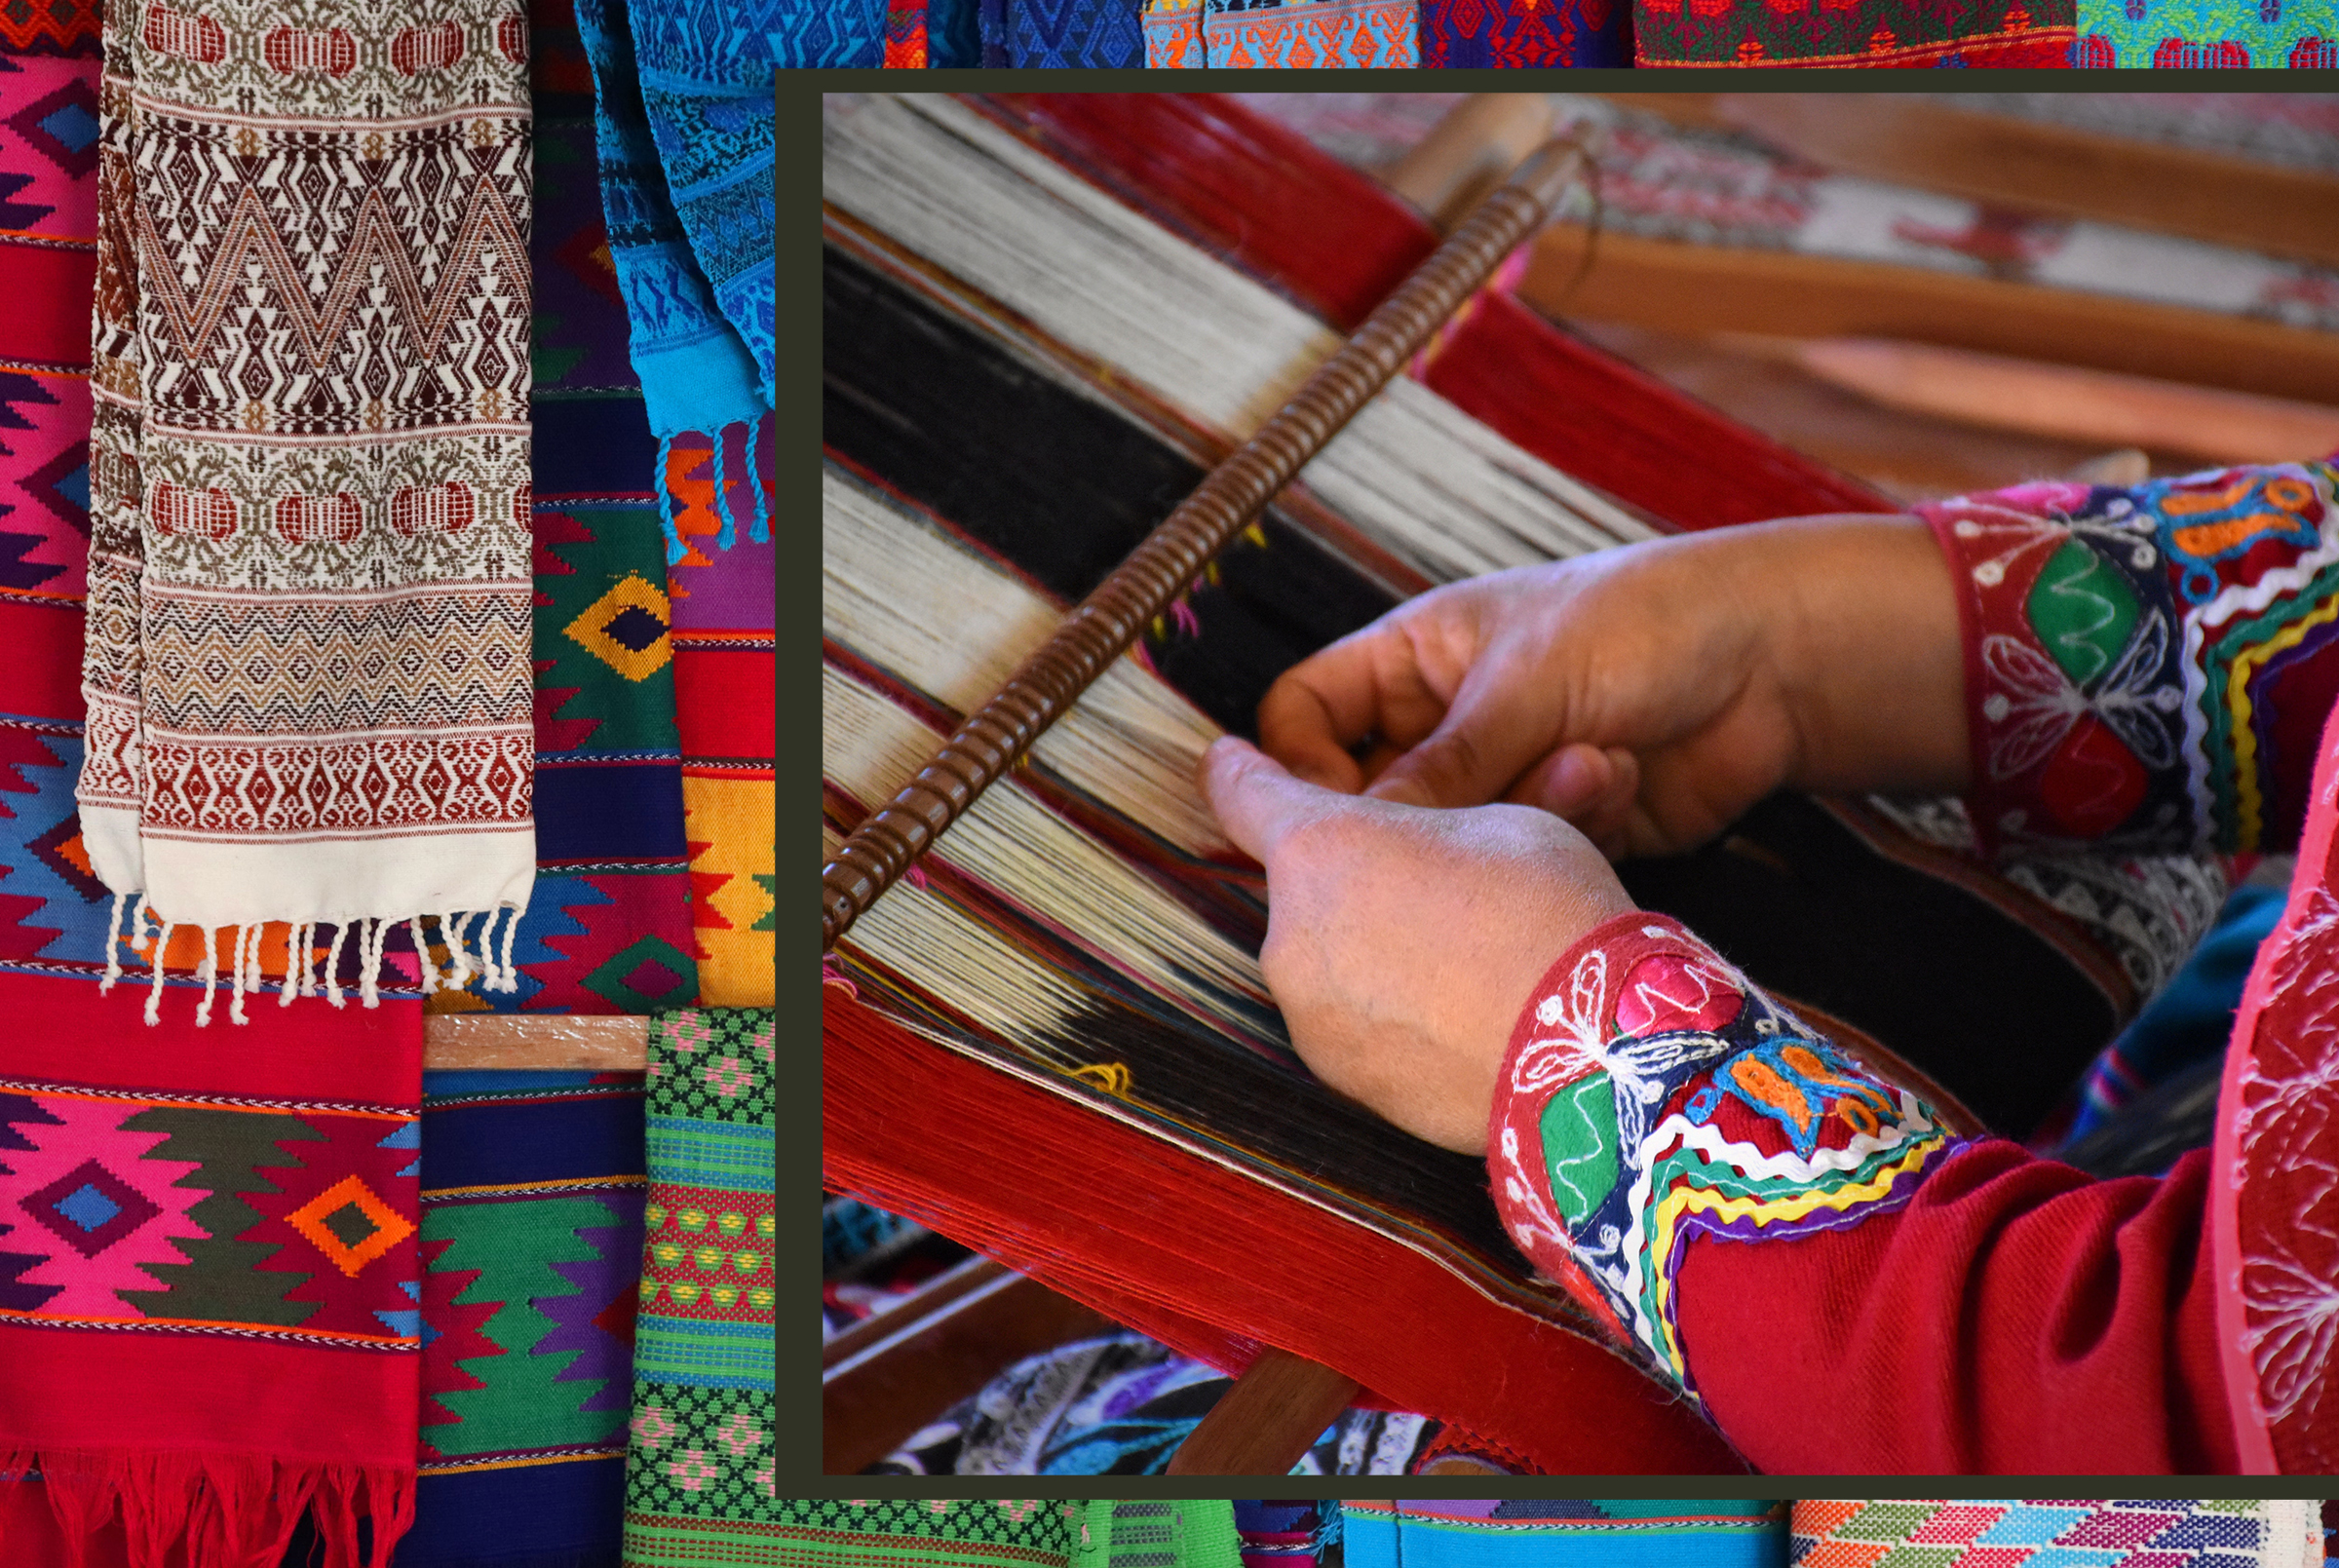 Cultural textiles